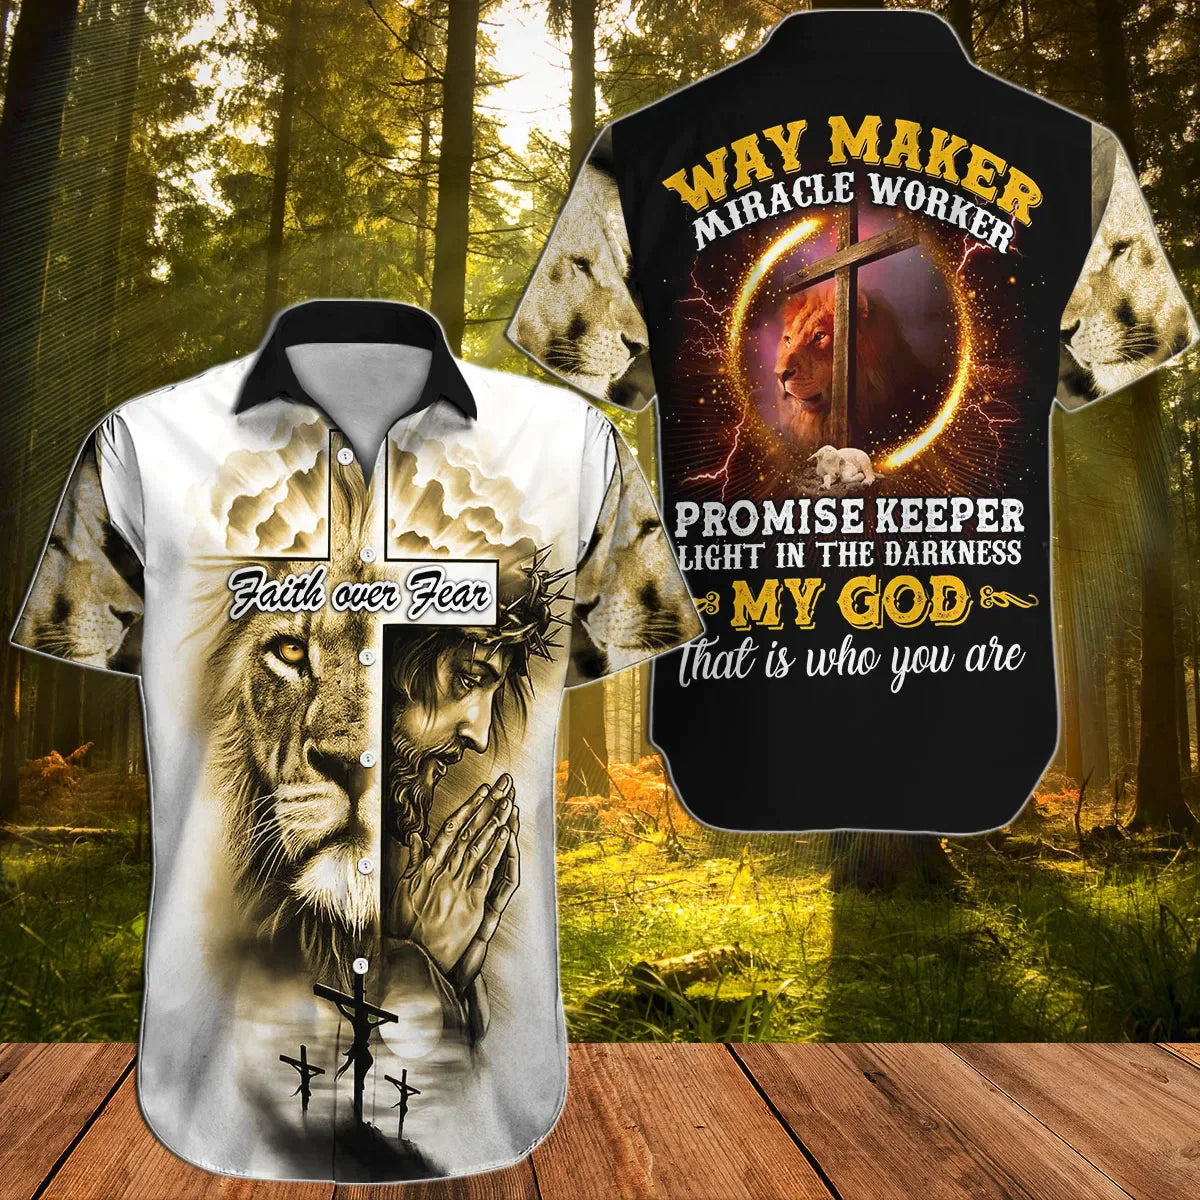 Jesus Hawaiian Shirt, God, Lion, Cross, Faith Over Fear, Way Maker Miracle Worker Aloha Shirt - Summer Gift For Christians, Men, Women